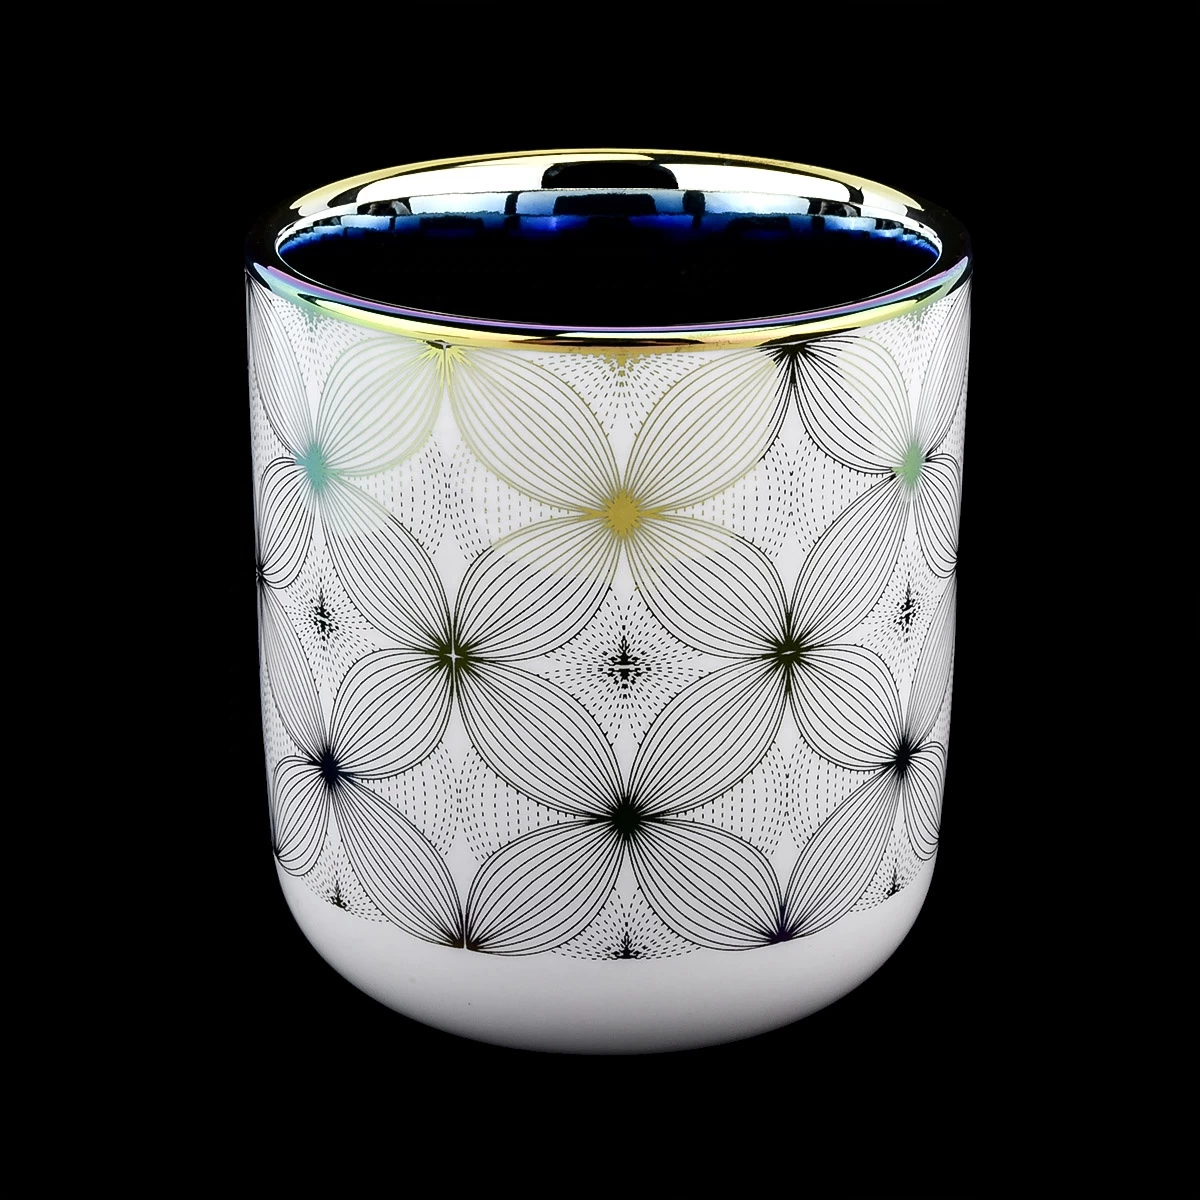 14 oz ceramic candle jars custom ceramic container for candle